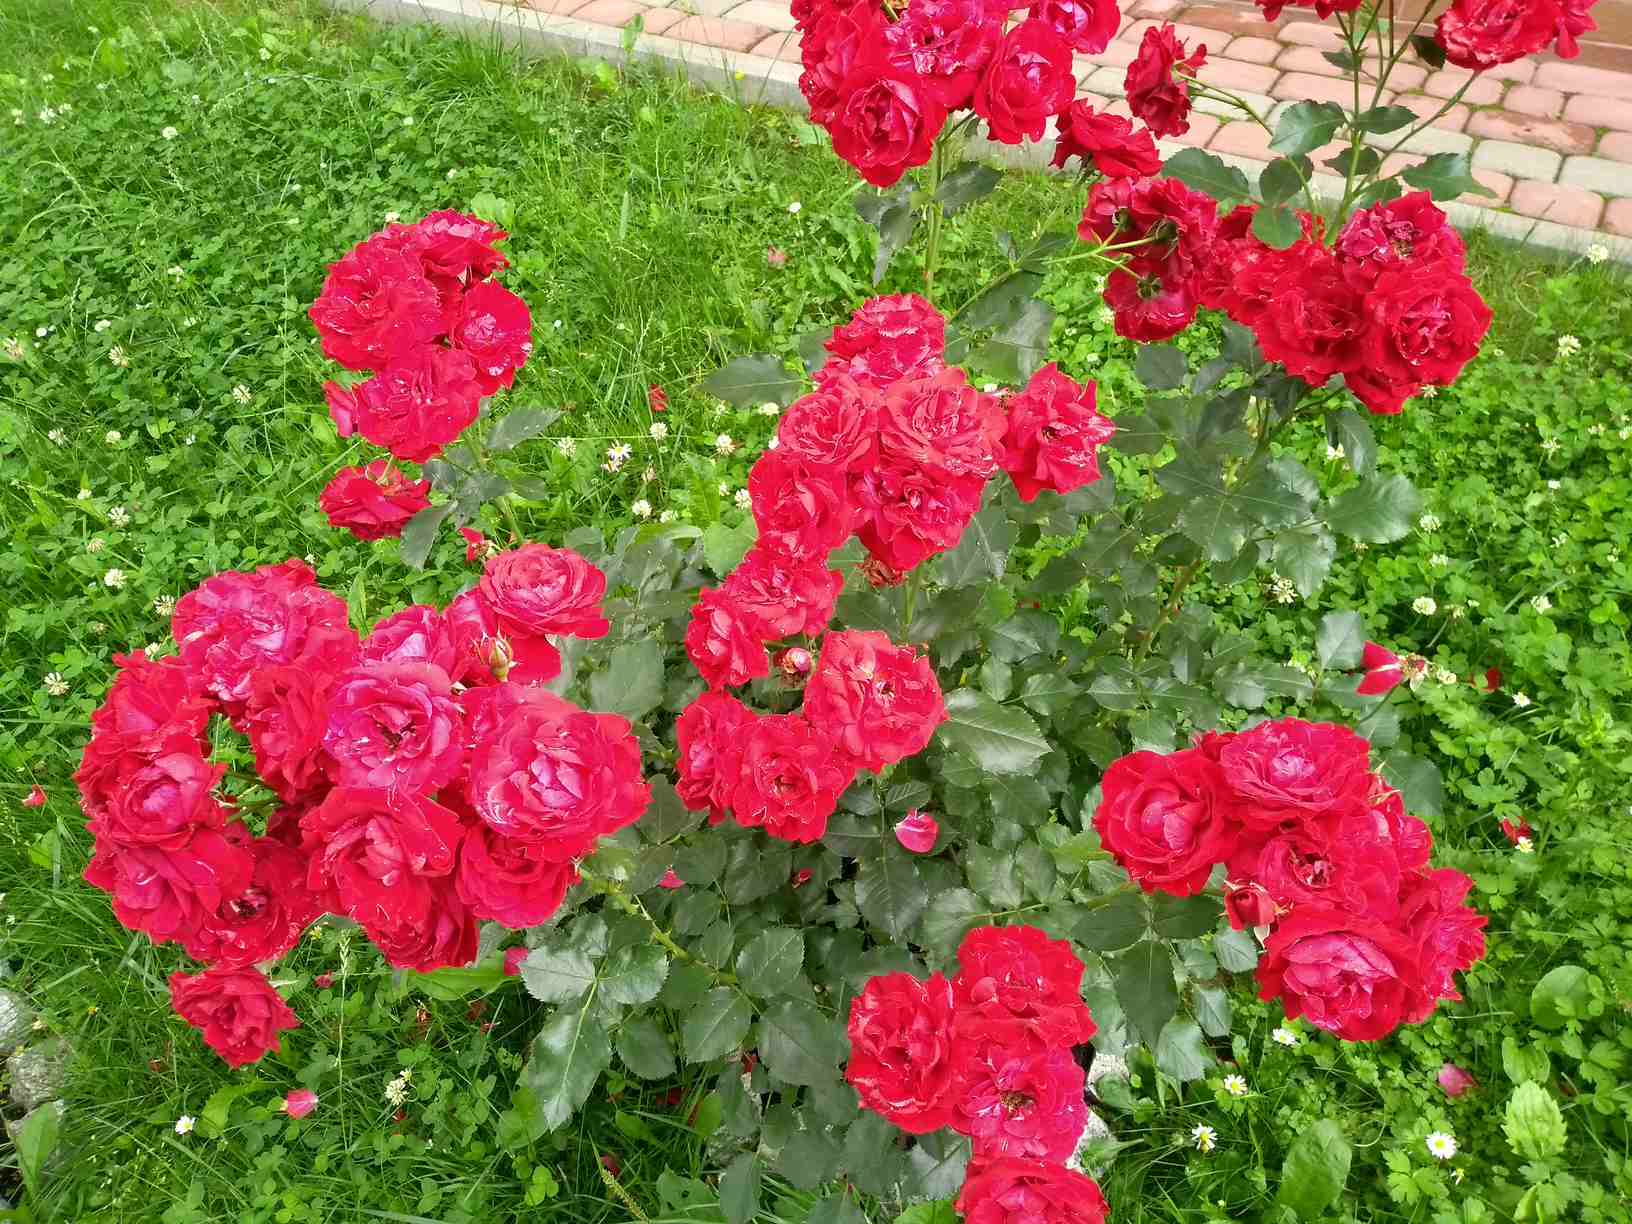 piękne róże